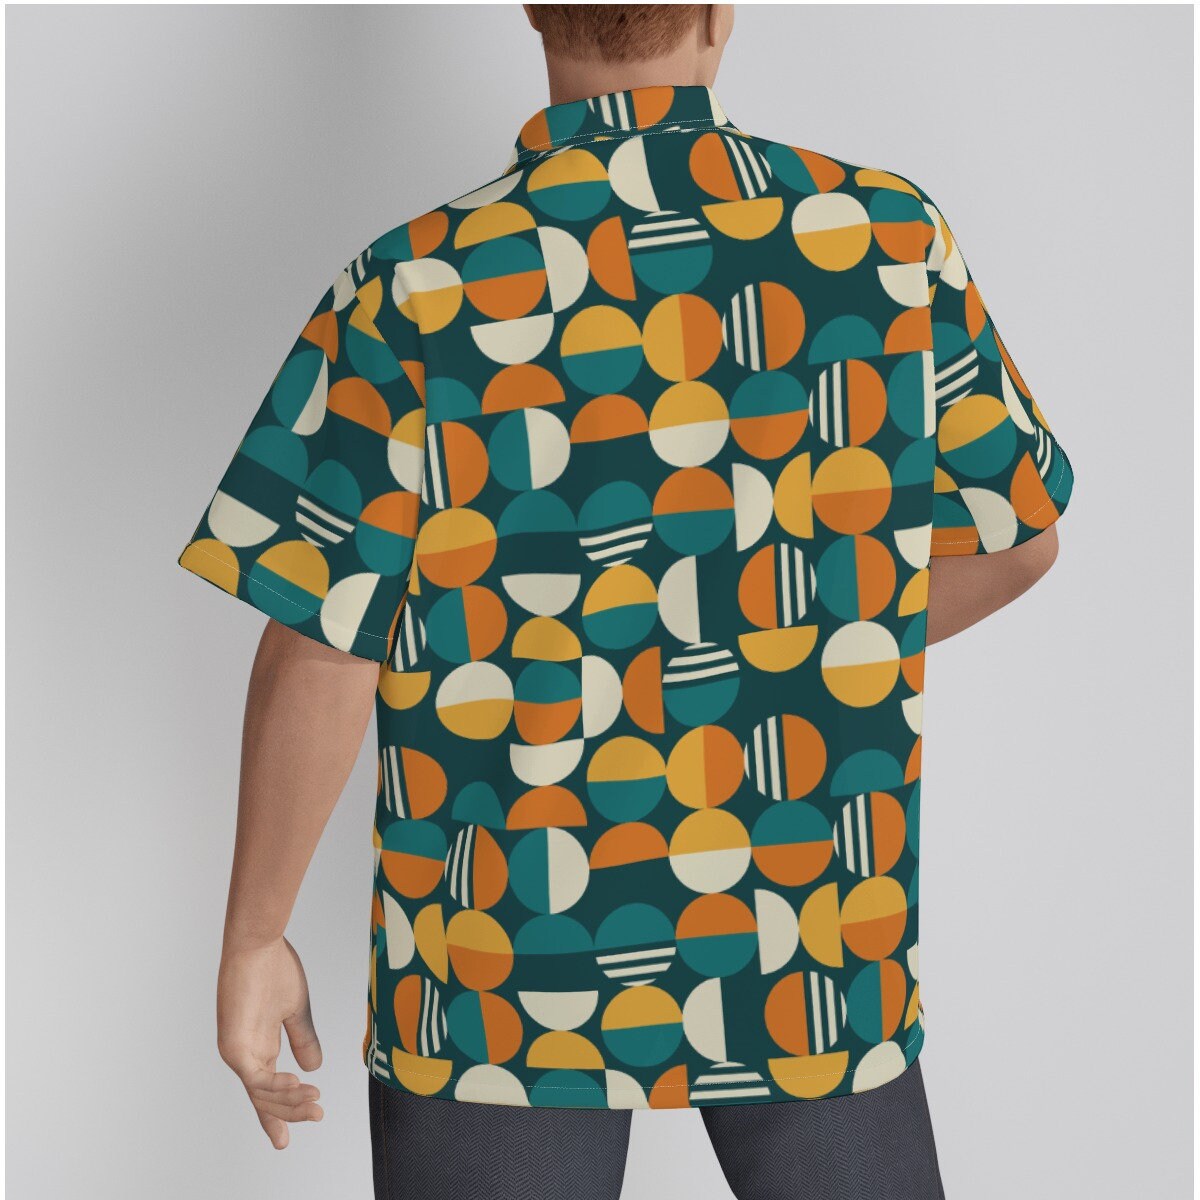 Retro-Hemd für Herren, Retro-Oberteil, Mod-Hemd, geometrisches Hemd, orangefarbenes Teal-Hemd, Vintage-Stil-Oberteil, 60er-Jahre-inspiriertes Hawaii-Hemd, Hemd